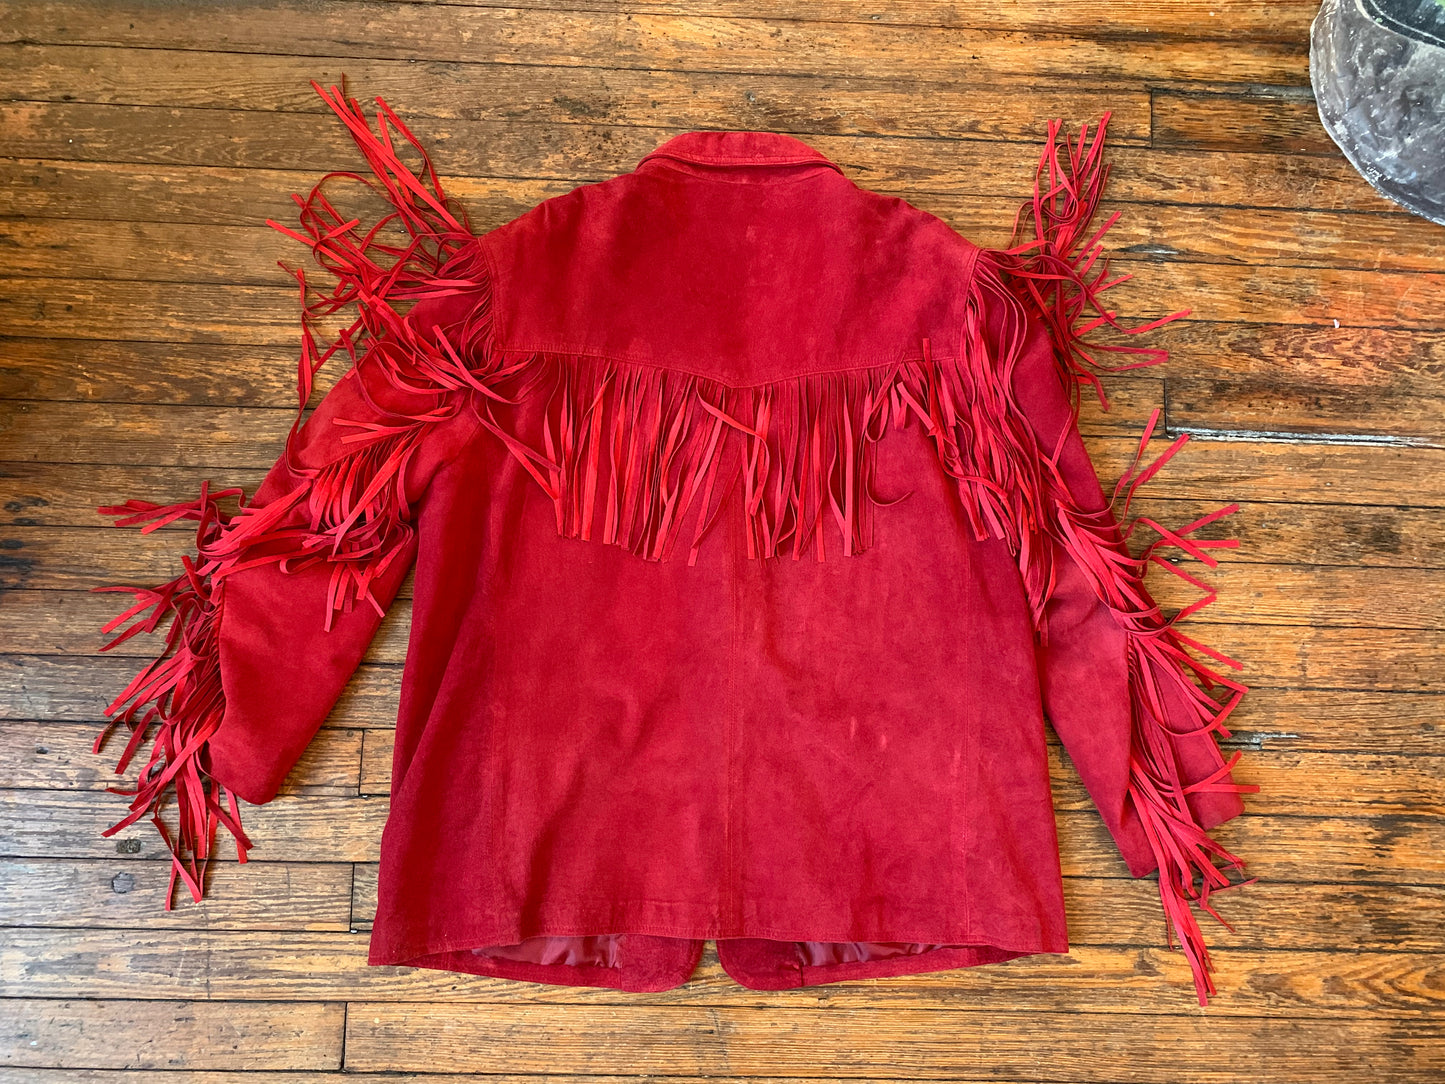 Vintage Winlit Bright Red Suede Leather Fringe Jacket